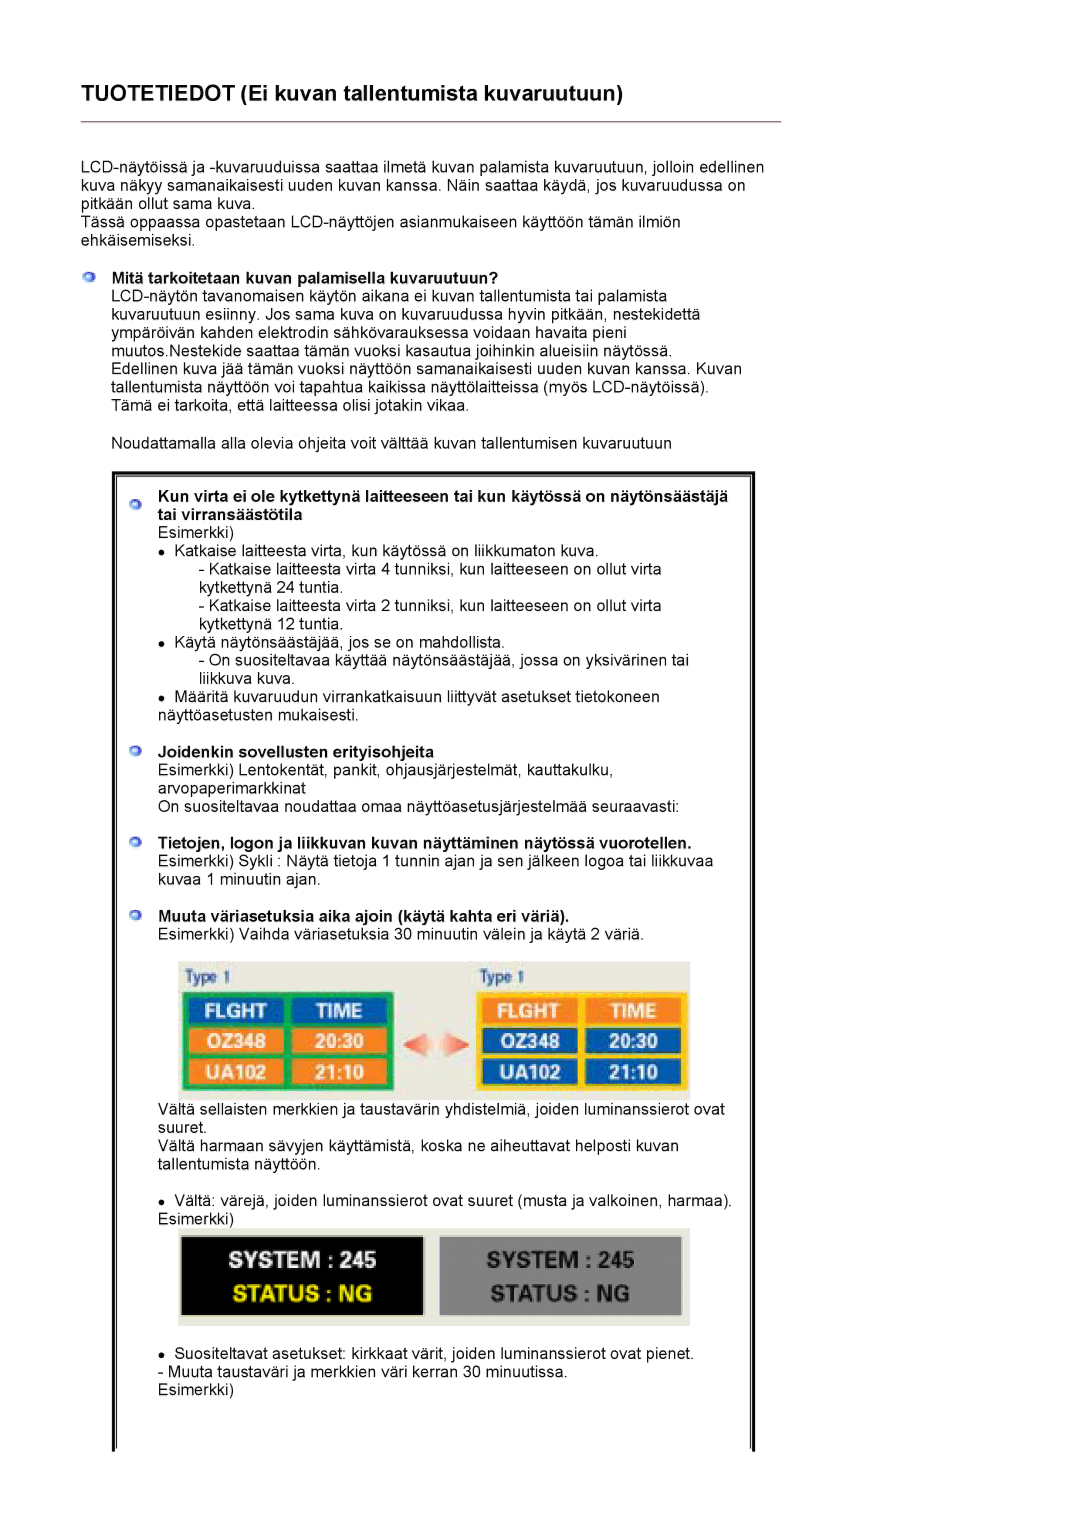 Samsung LS17MCASS/EDC manual Tuotetiedot Ei kuvan tallentumista kuvaruutuun 